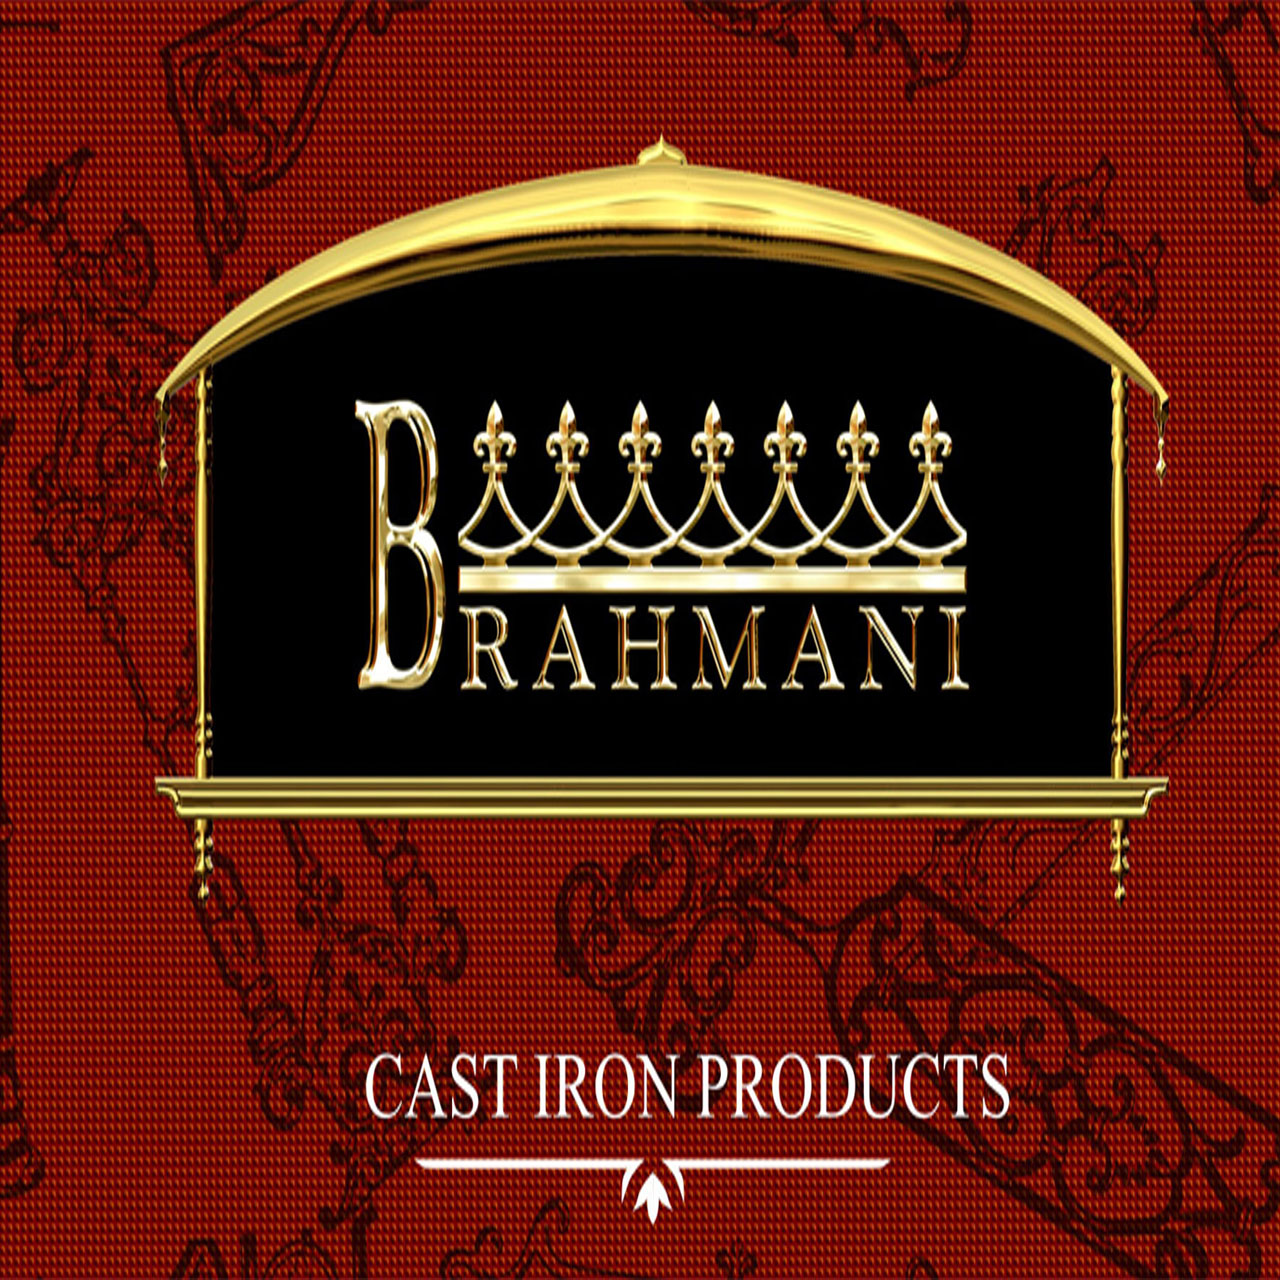 Brahmani Foundry